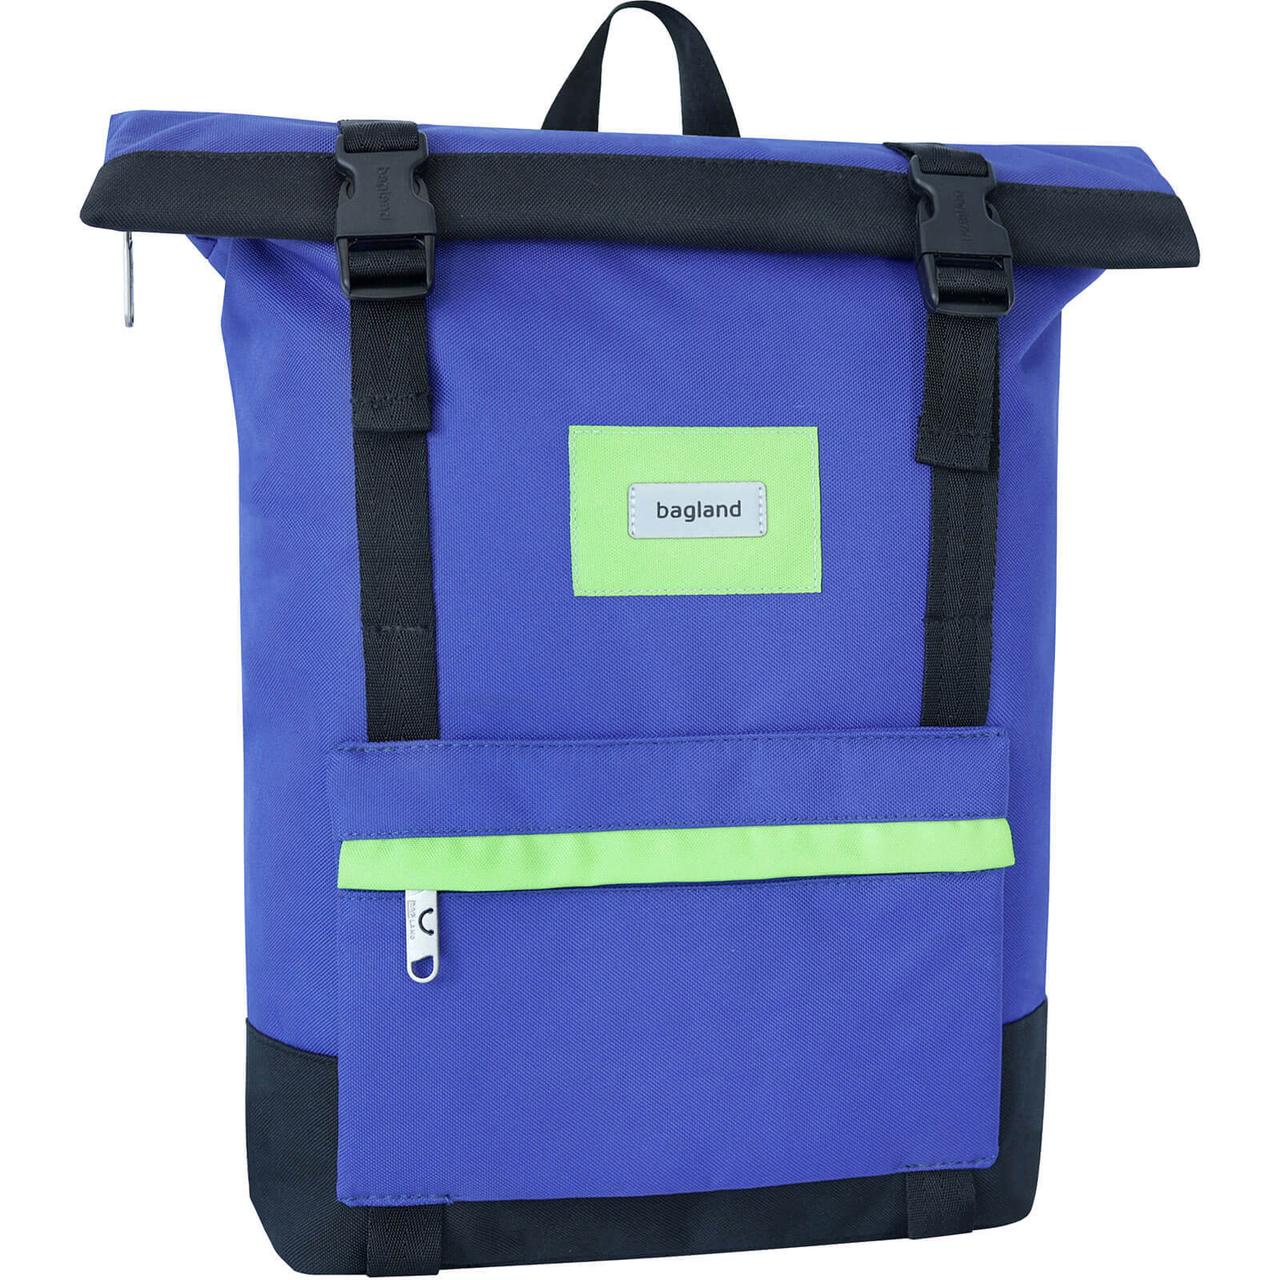 Рюкзак rolltoр для міста та подорожей Bagland Holder 25 л кольору електрик у комбінації з чорним (0051666)